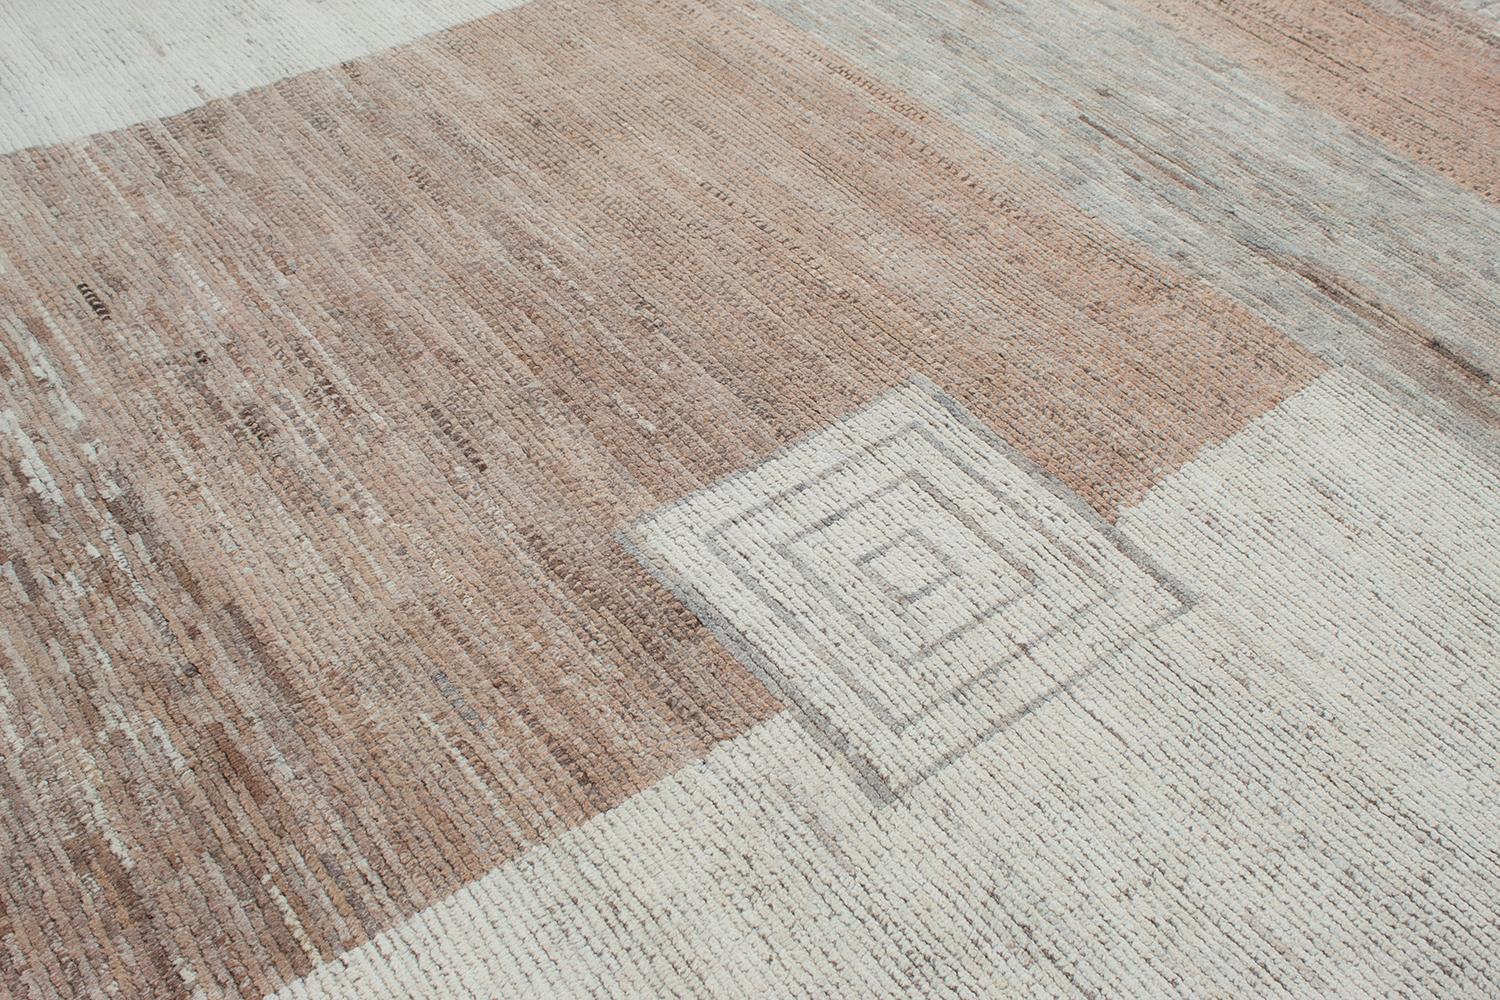 Ce magnifique tapis moderne est composé à 100 % de laine filée et cardée à la main, ce qui le rend extrêmement durable. Son design très minimal, avec des éléments géométriques, lui permet de s'adapter à toutes sortes de situations. Il y a des tons